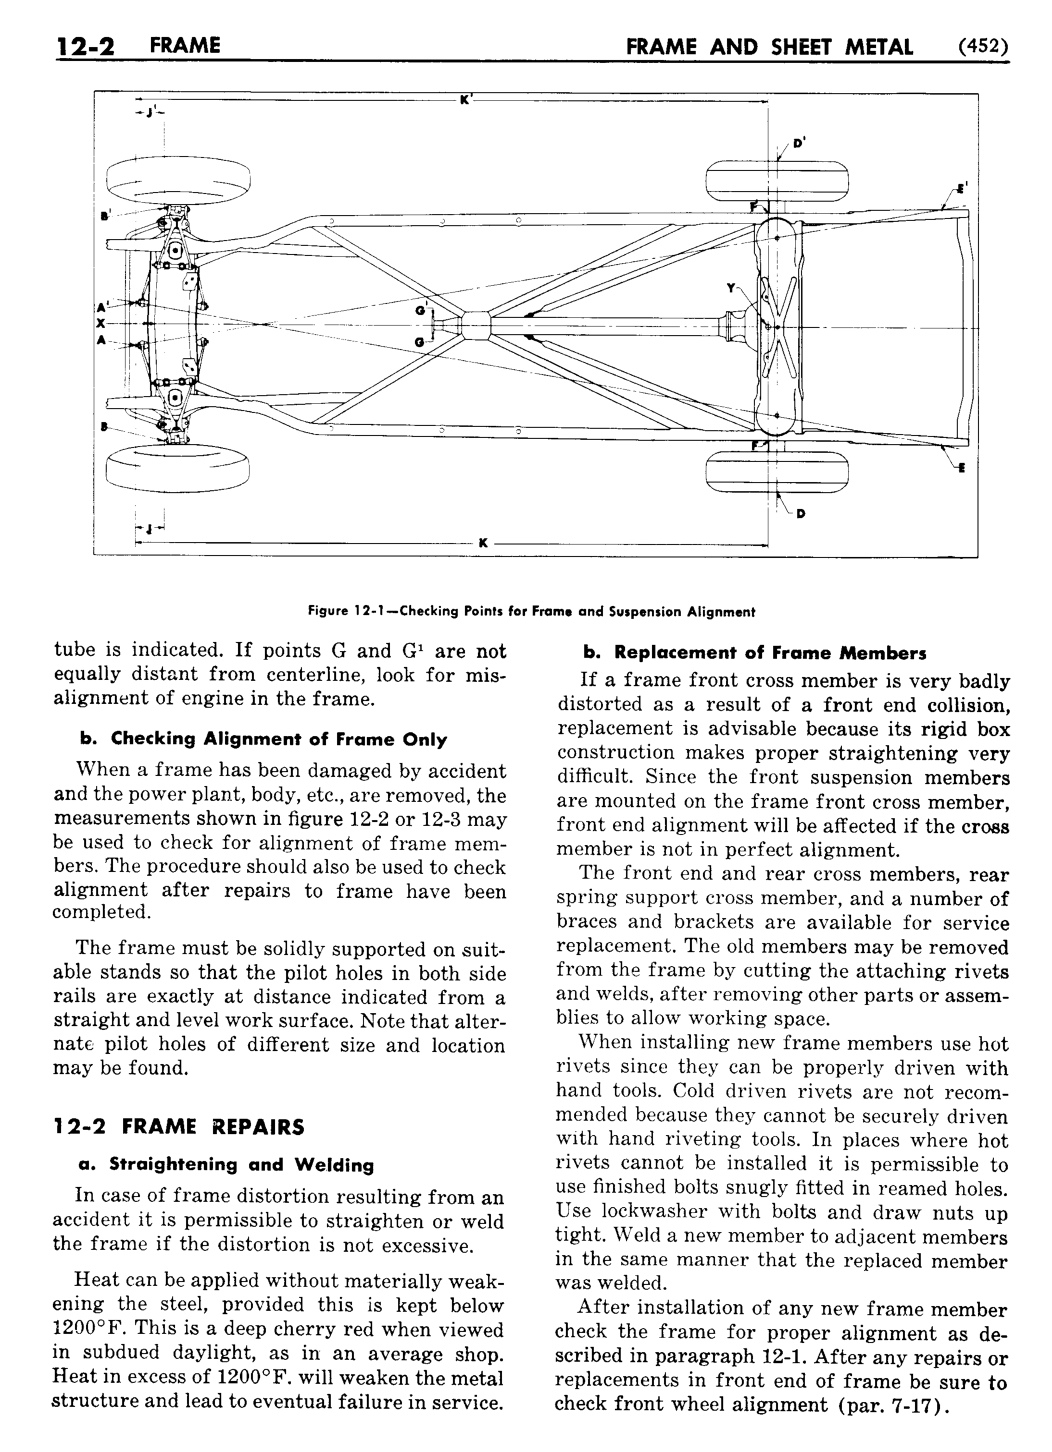 n_13 1956 Buick Shop Manual - Frame & Sheet Metal-002-002.jpg